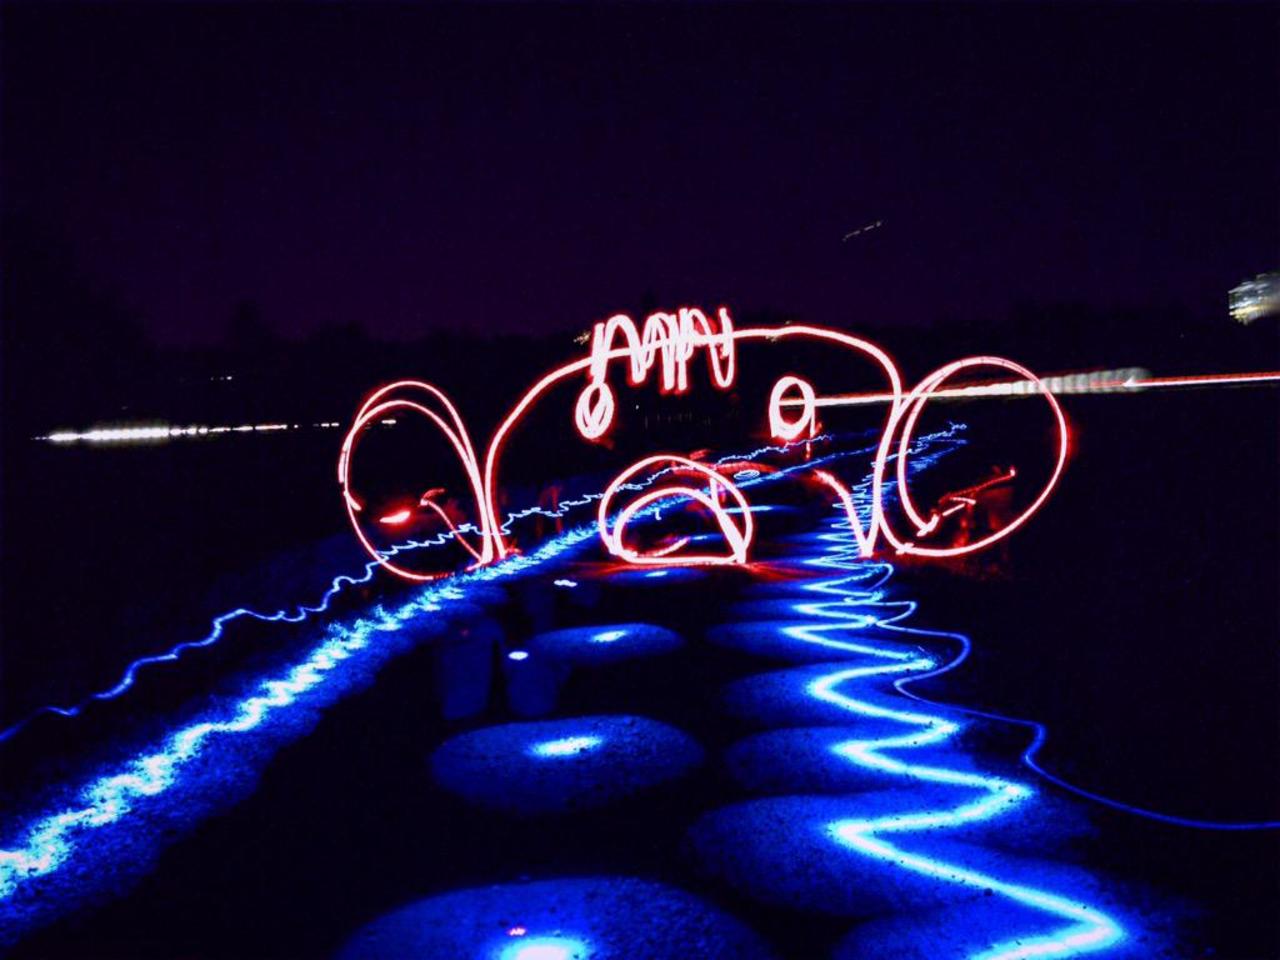 #light #river #P8NocniSvet #lightart #lightdrowing #lightpainting #ring #red #ballons #blue #night #city #face http://t.co/tw7BdCxwDE